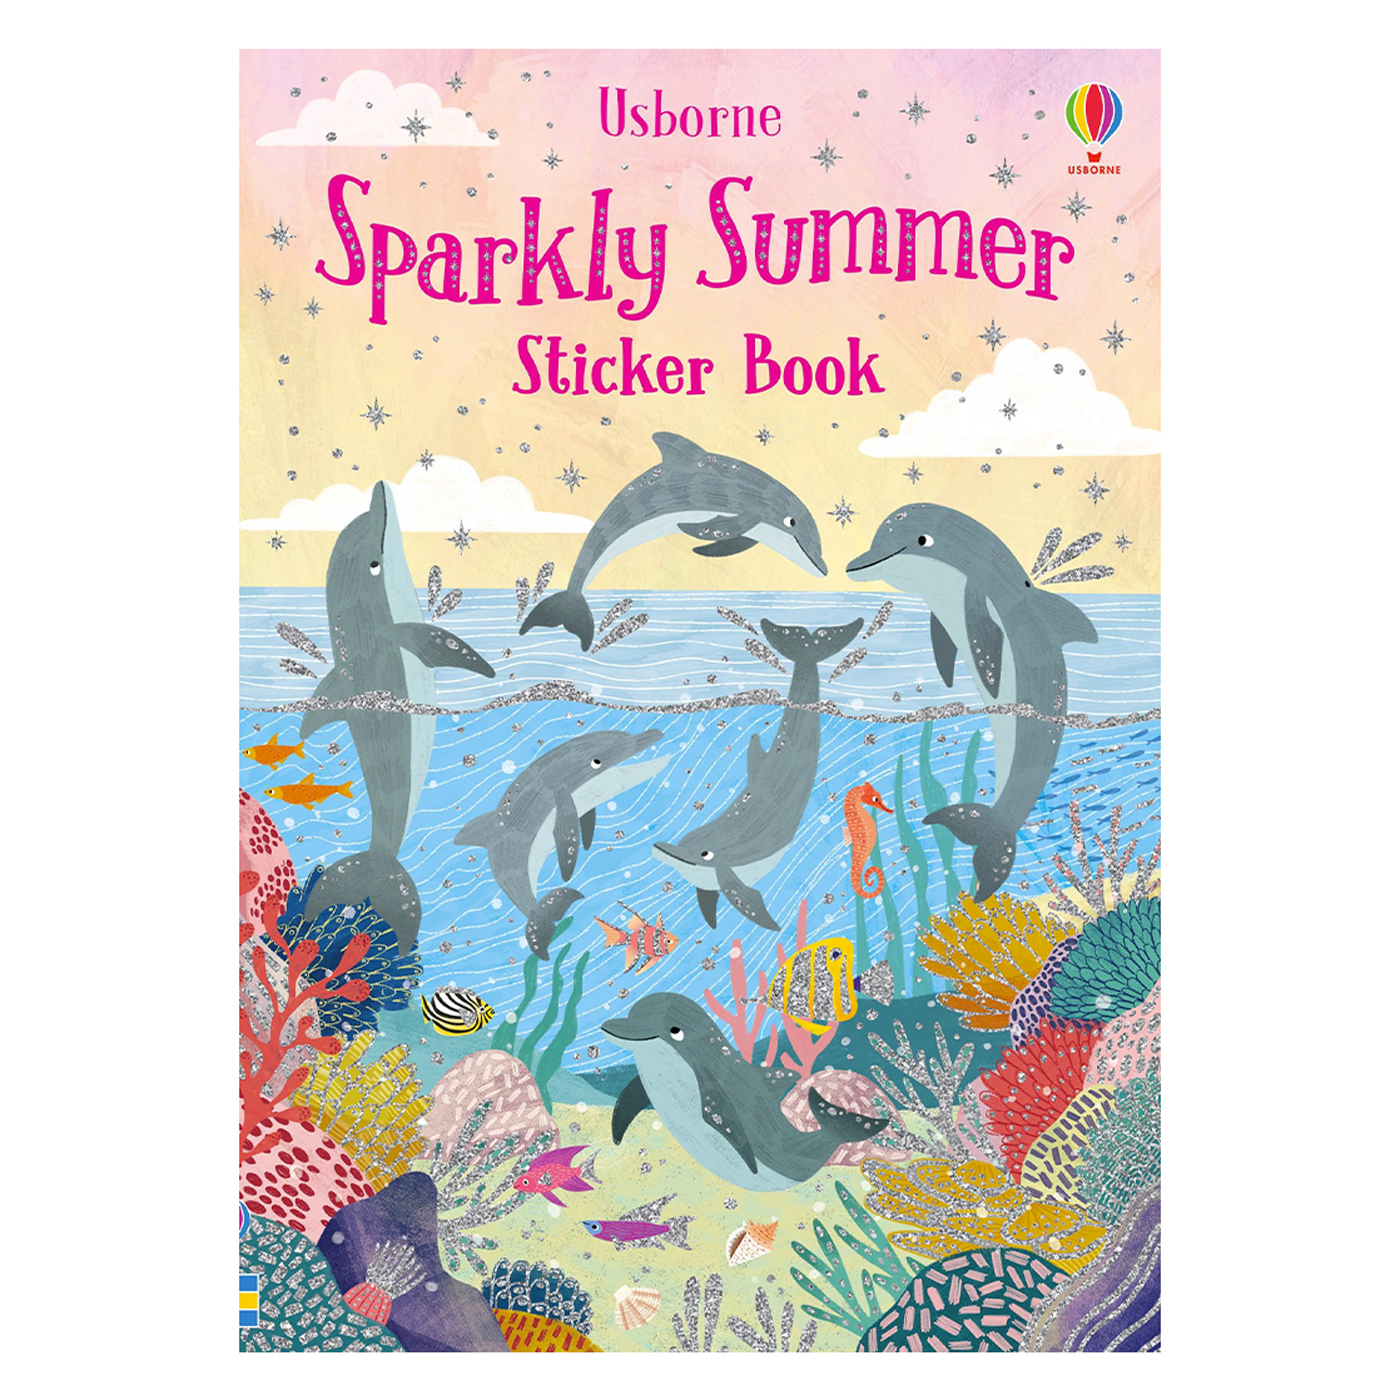  Sparkly Summer Sticker Book